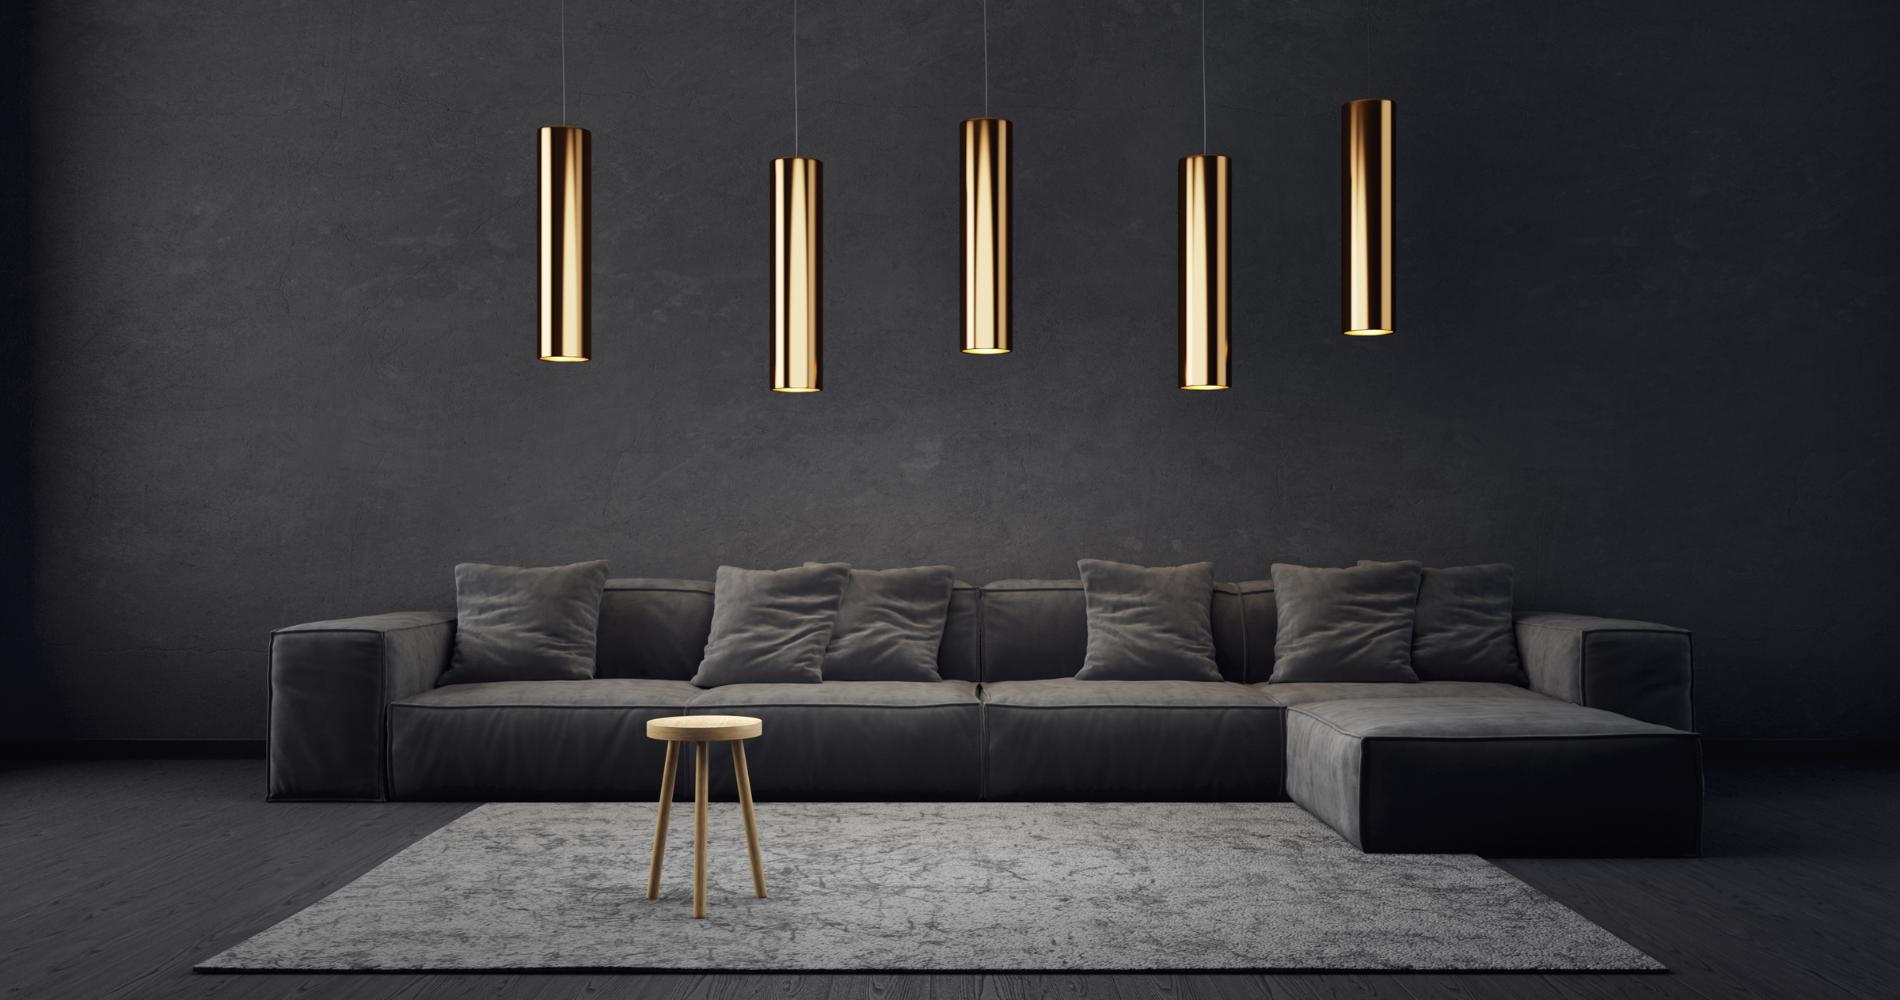 Grå chaiselong sofa i stue med flotte guld lamper fra loftet